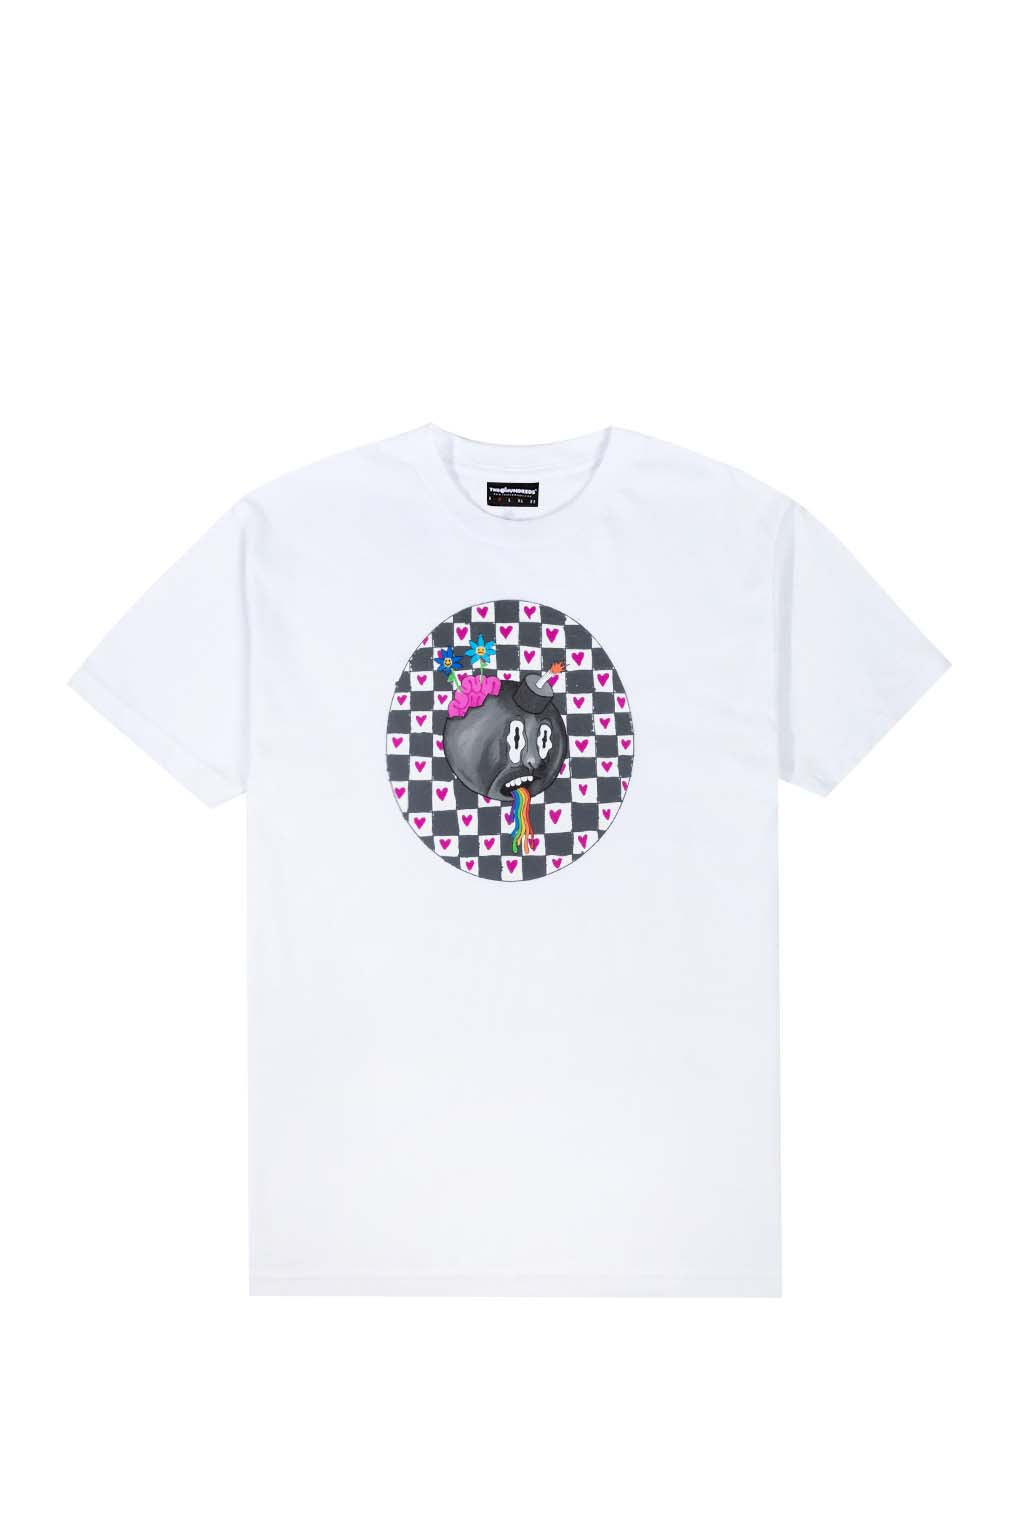 Image of Checker Hearts T-Shirt